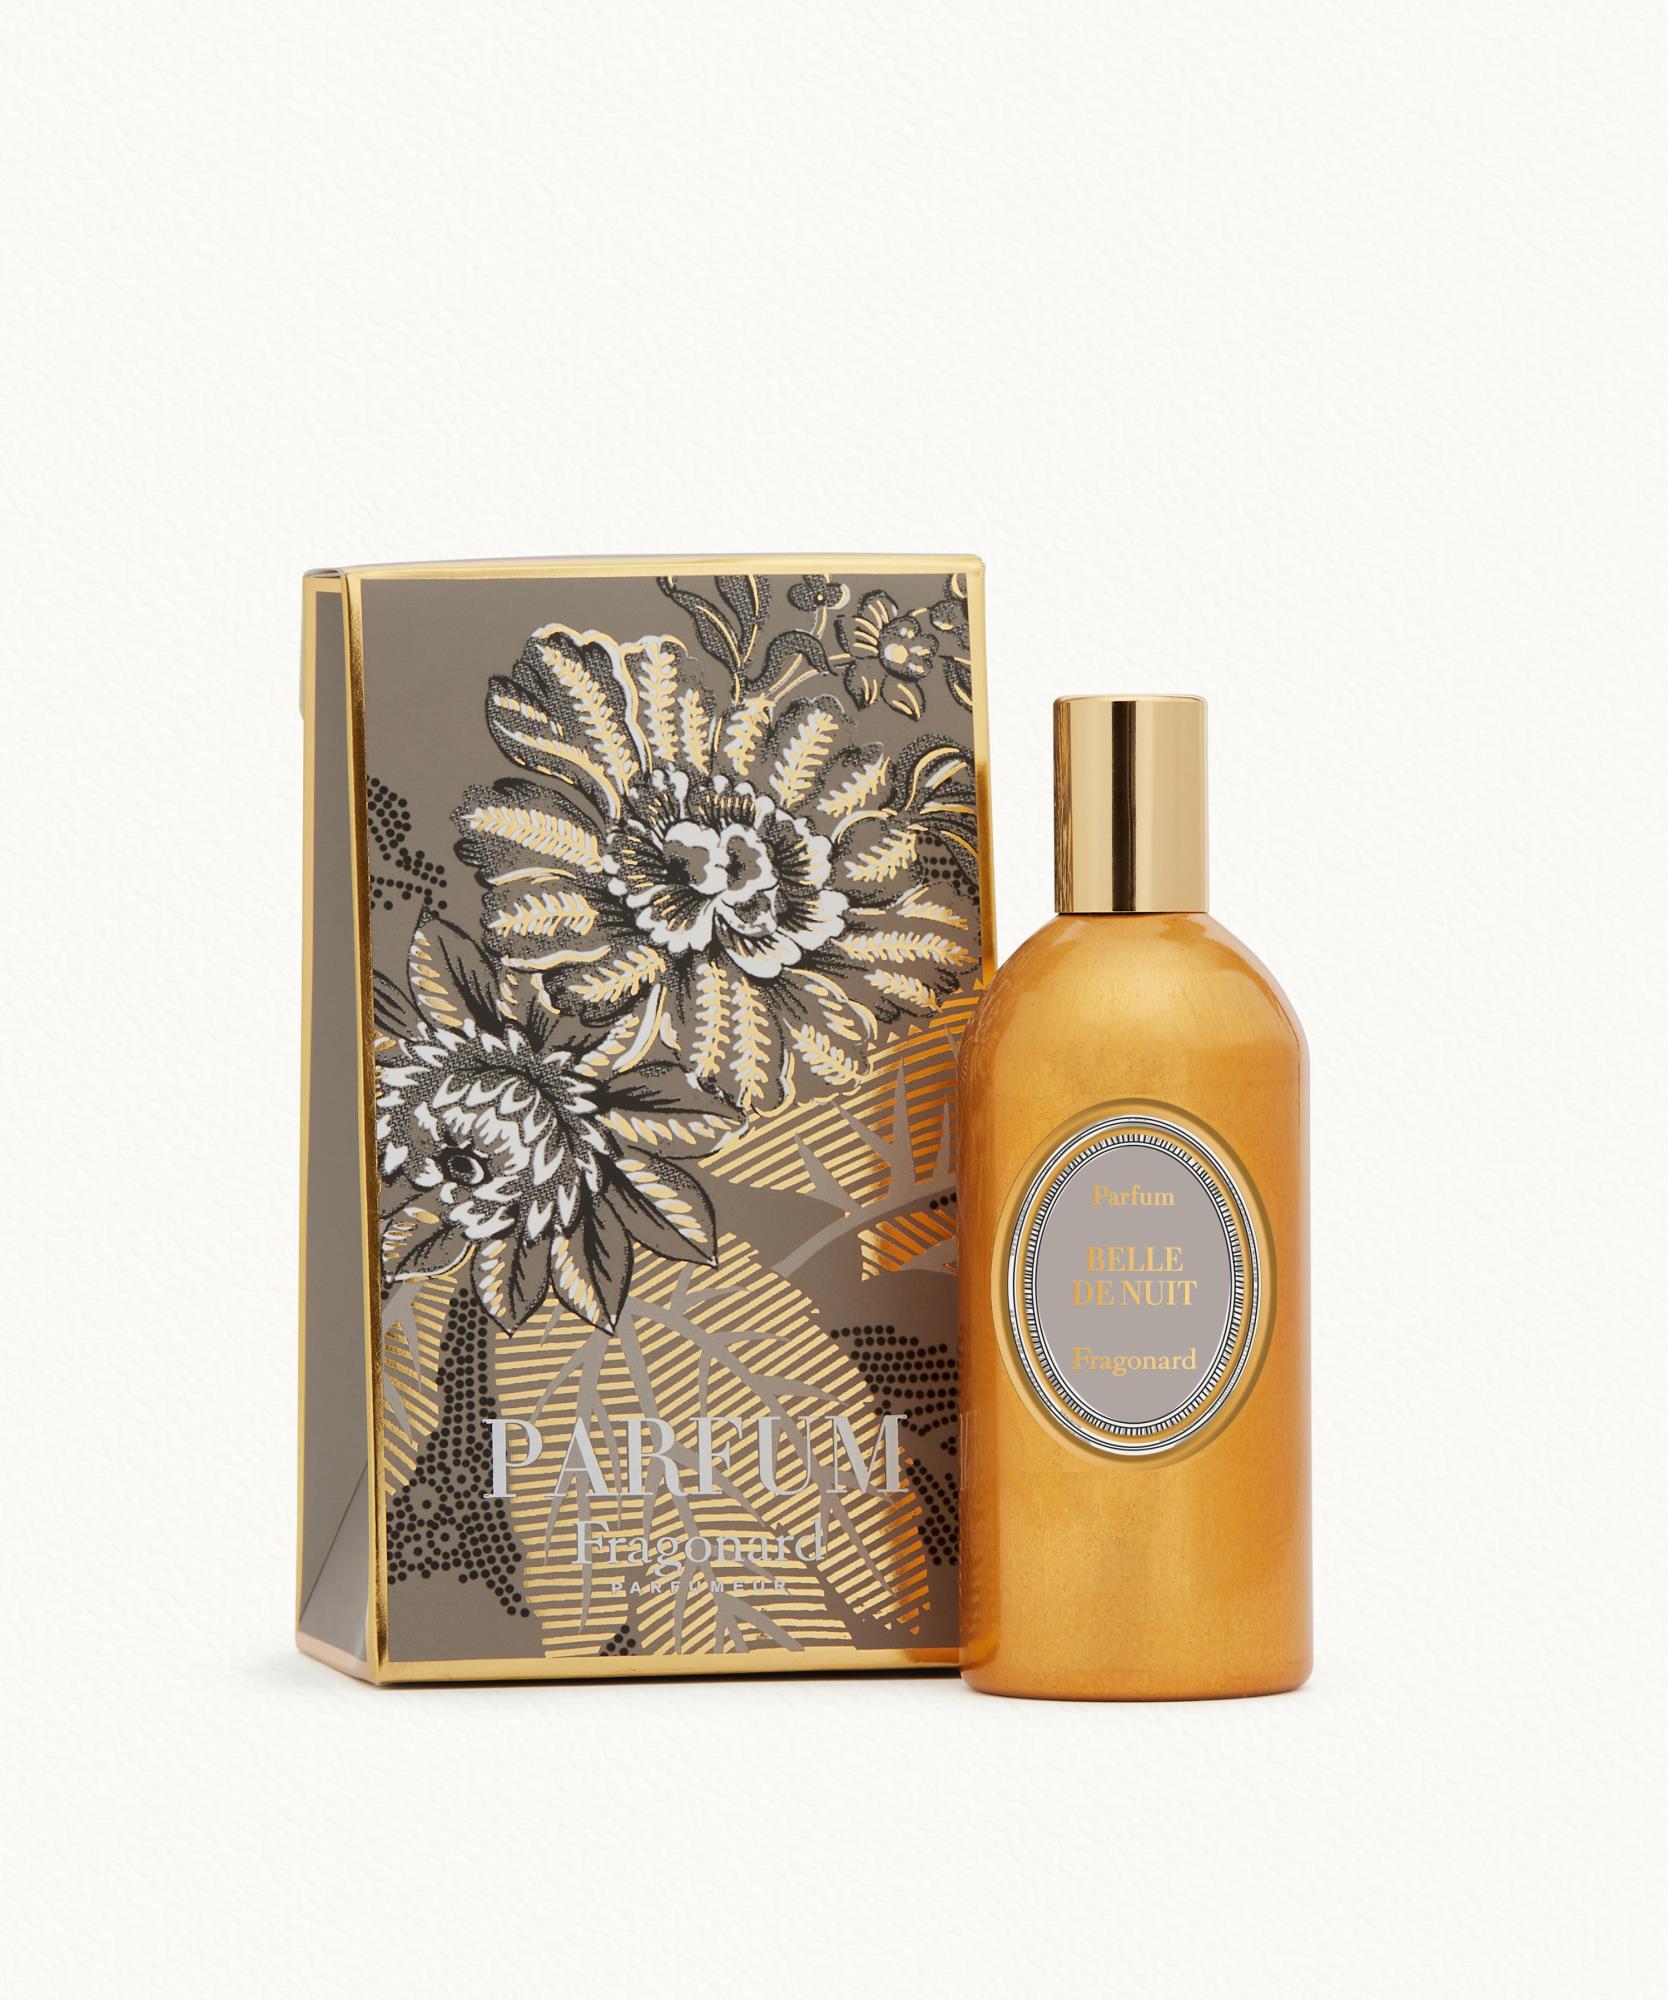 Belle de Nuit Perfume Gilded Alu Natural Spray 120 ml Fragonard - 99,00 €